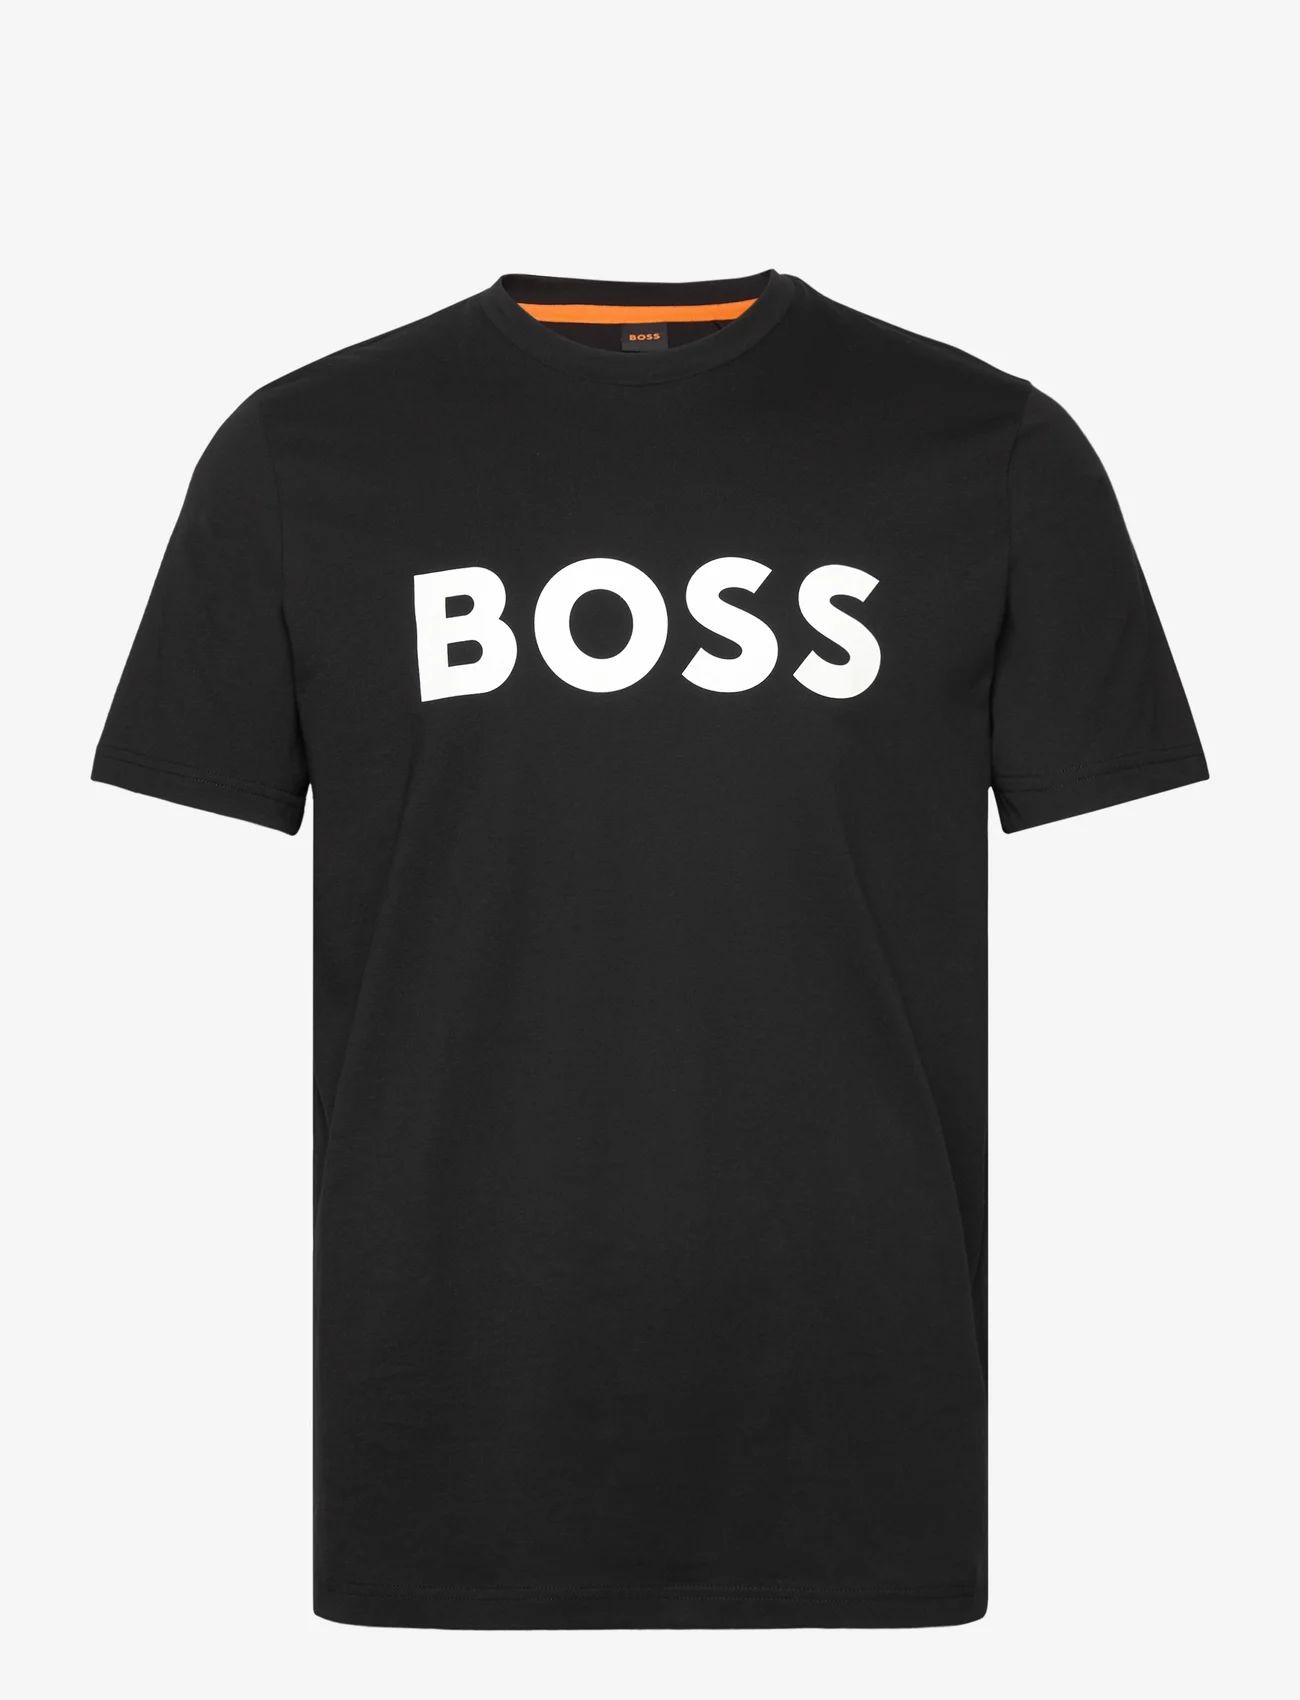 BOSS - Thinking 1 - kortermede t-skjorter - black - 0